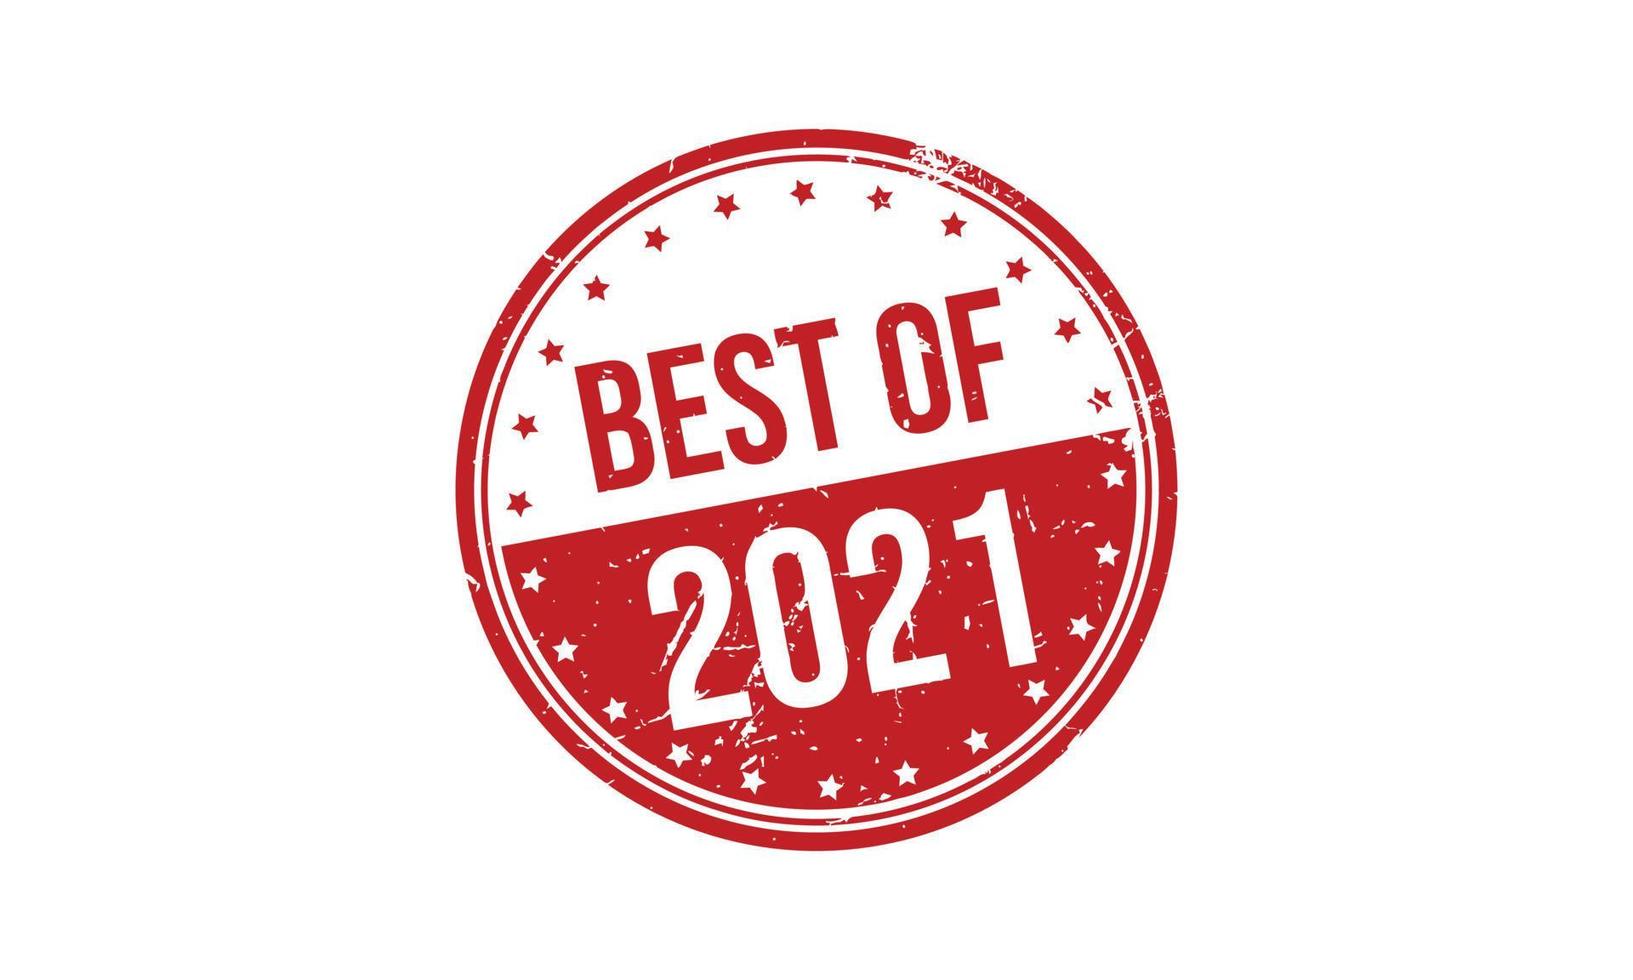 het beste van 2021 rubber stempel. het beste van 2021 grunge postzegel zegel vector illustratie